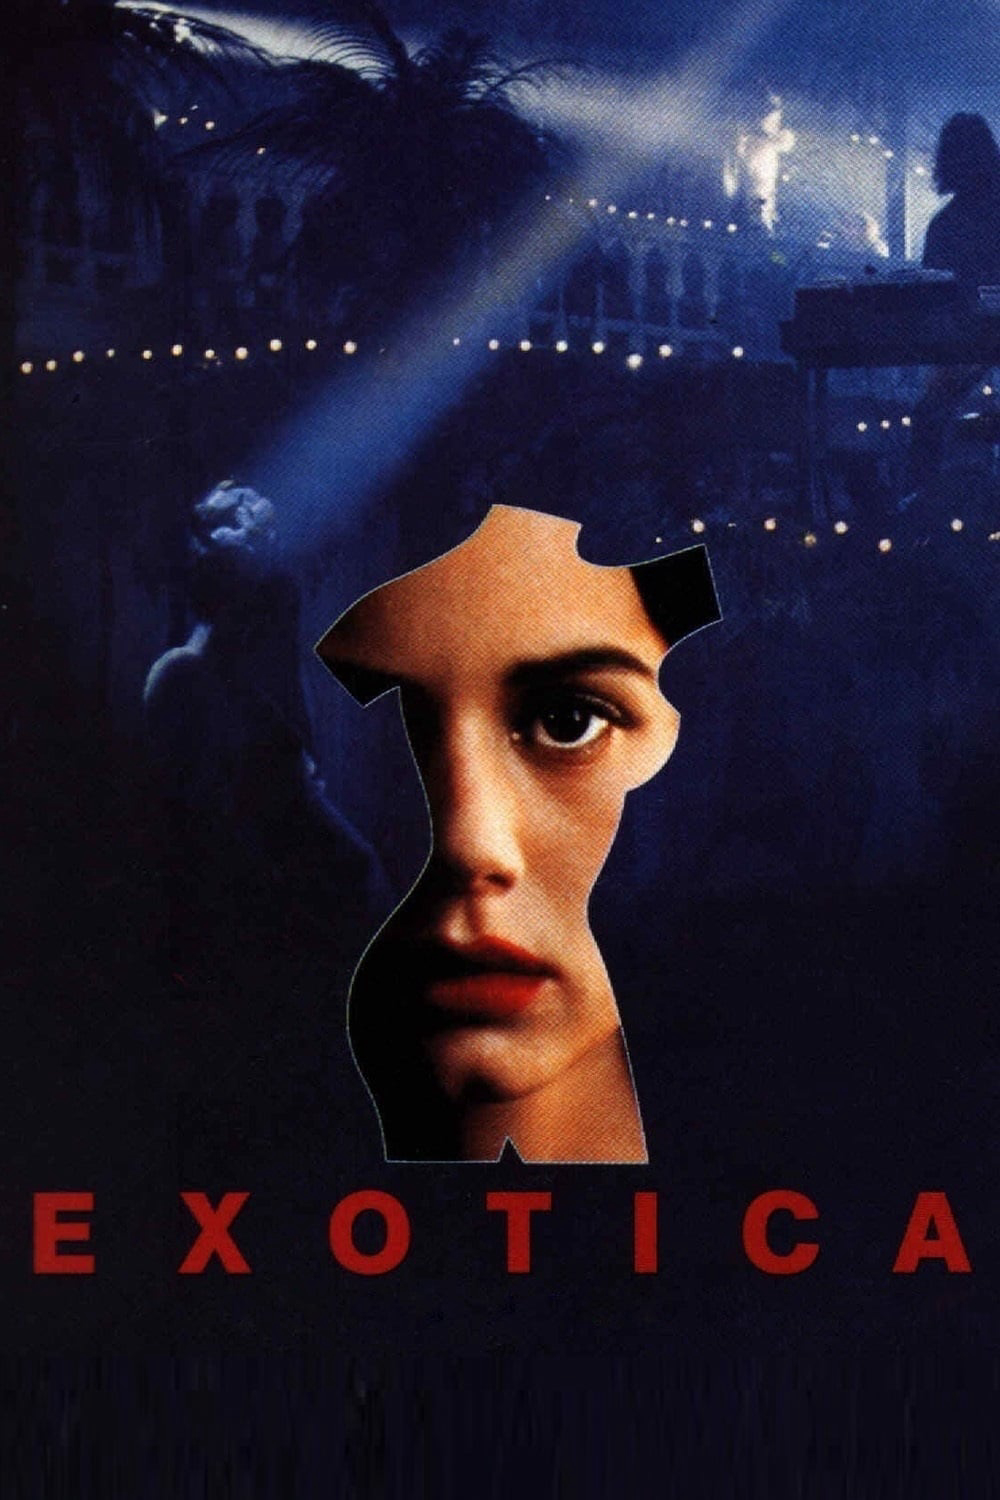 Exotica - Exotica